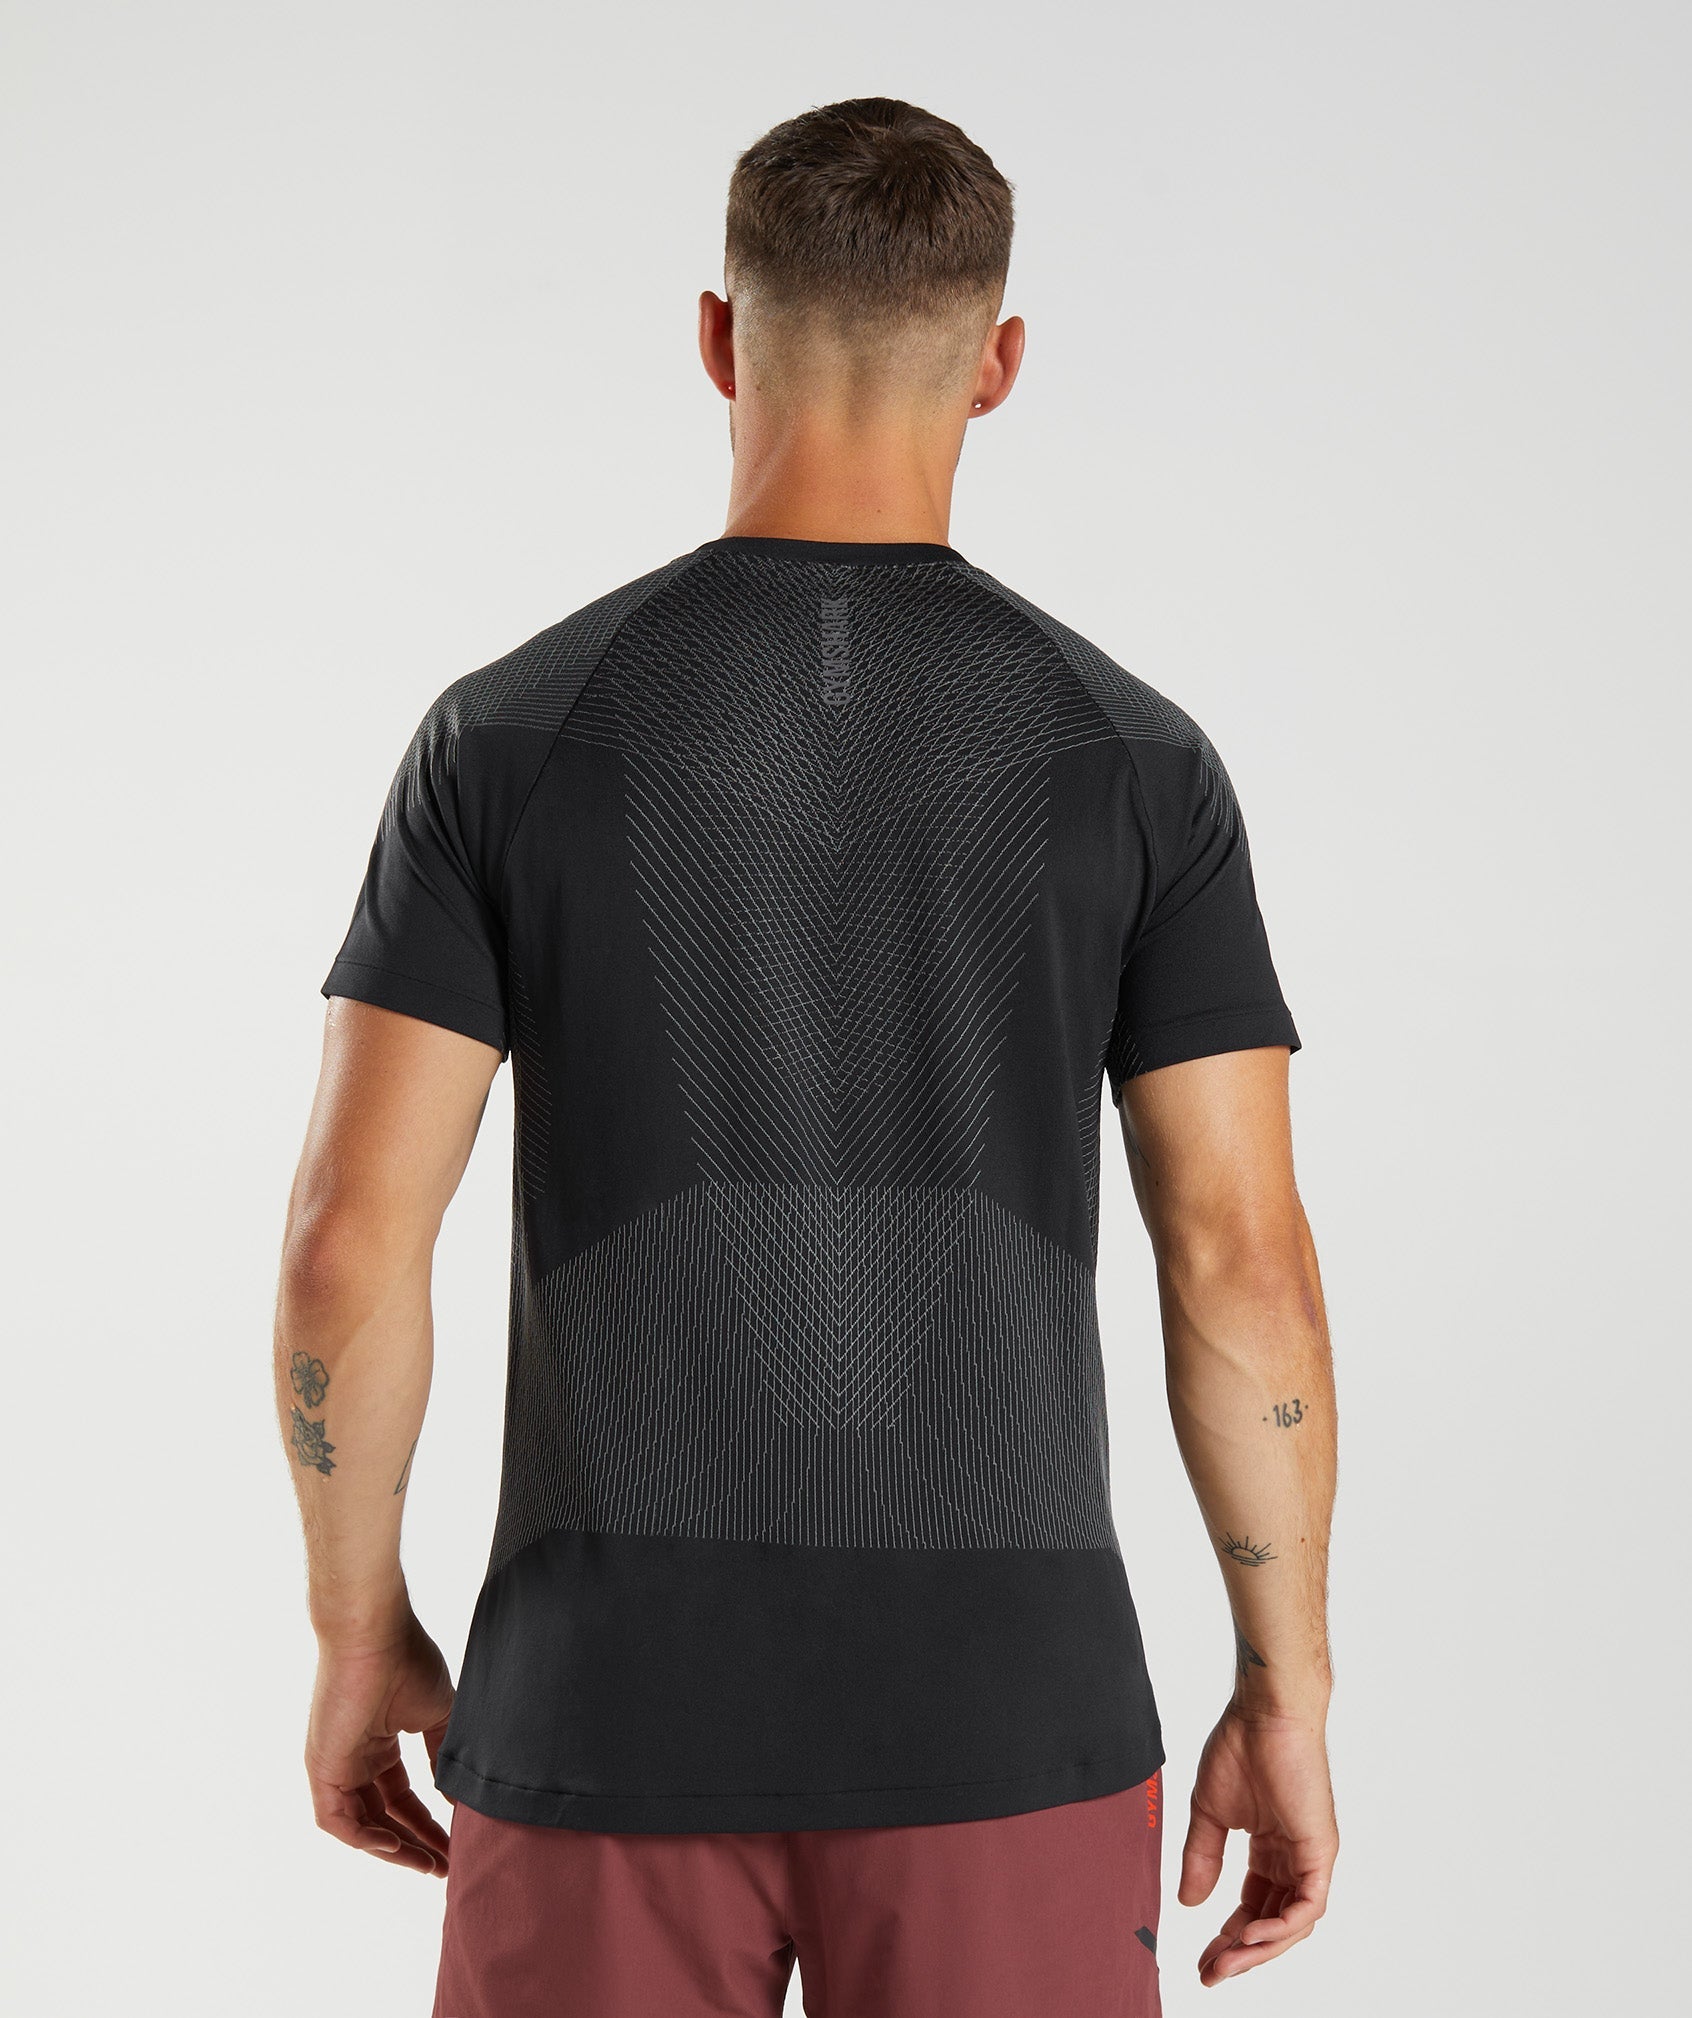 Gymshark Apex Seamless T-Shirt - Linen Brown/Black